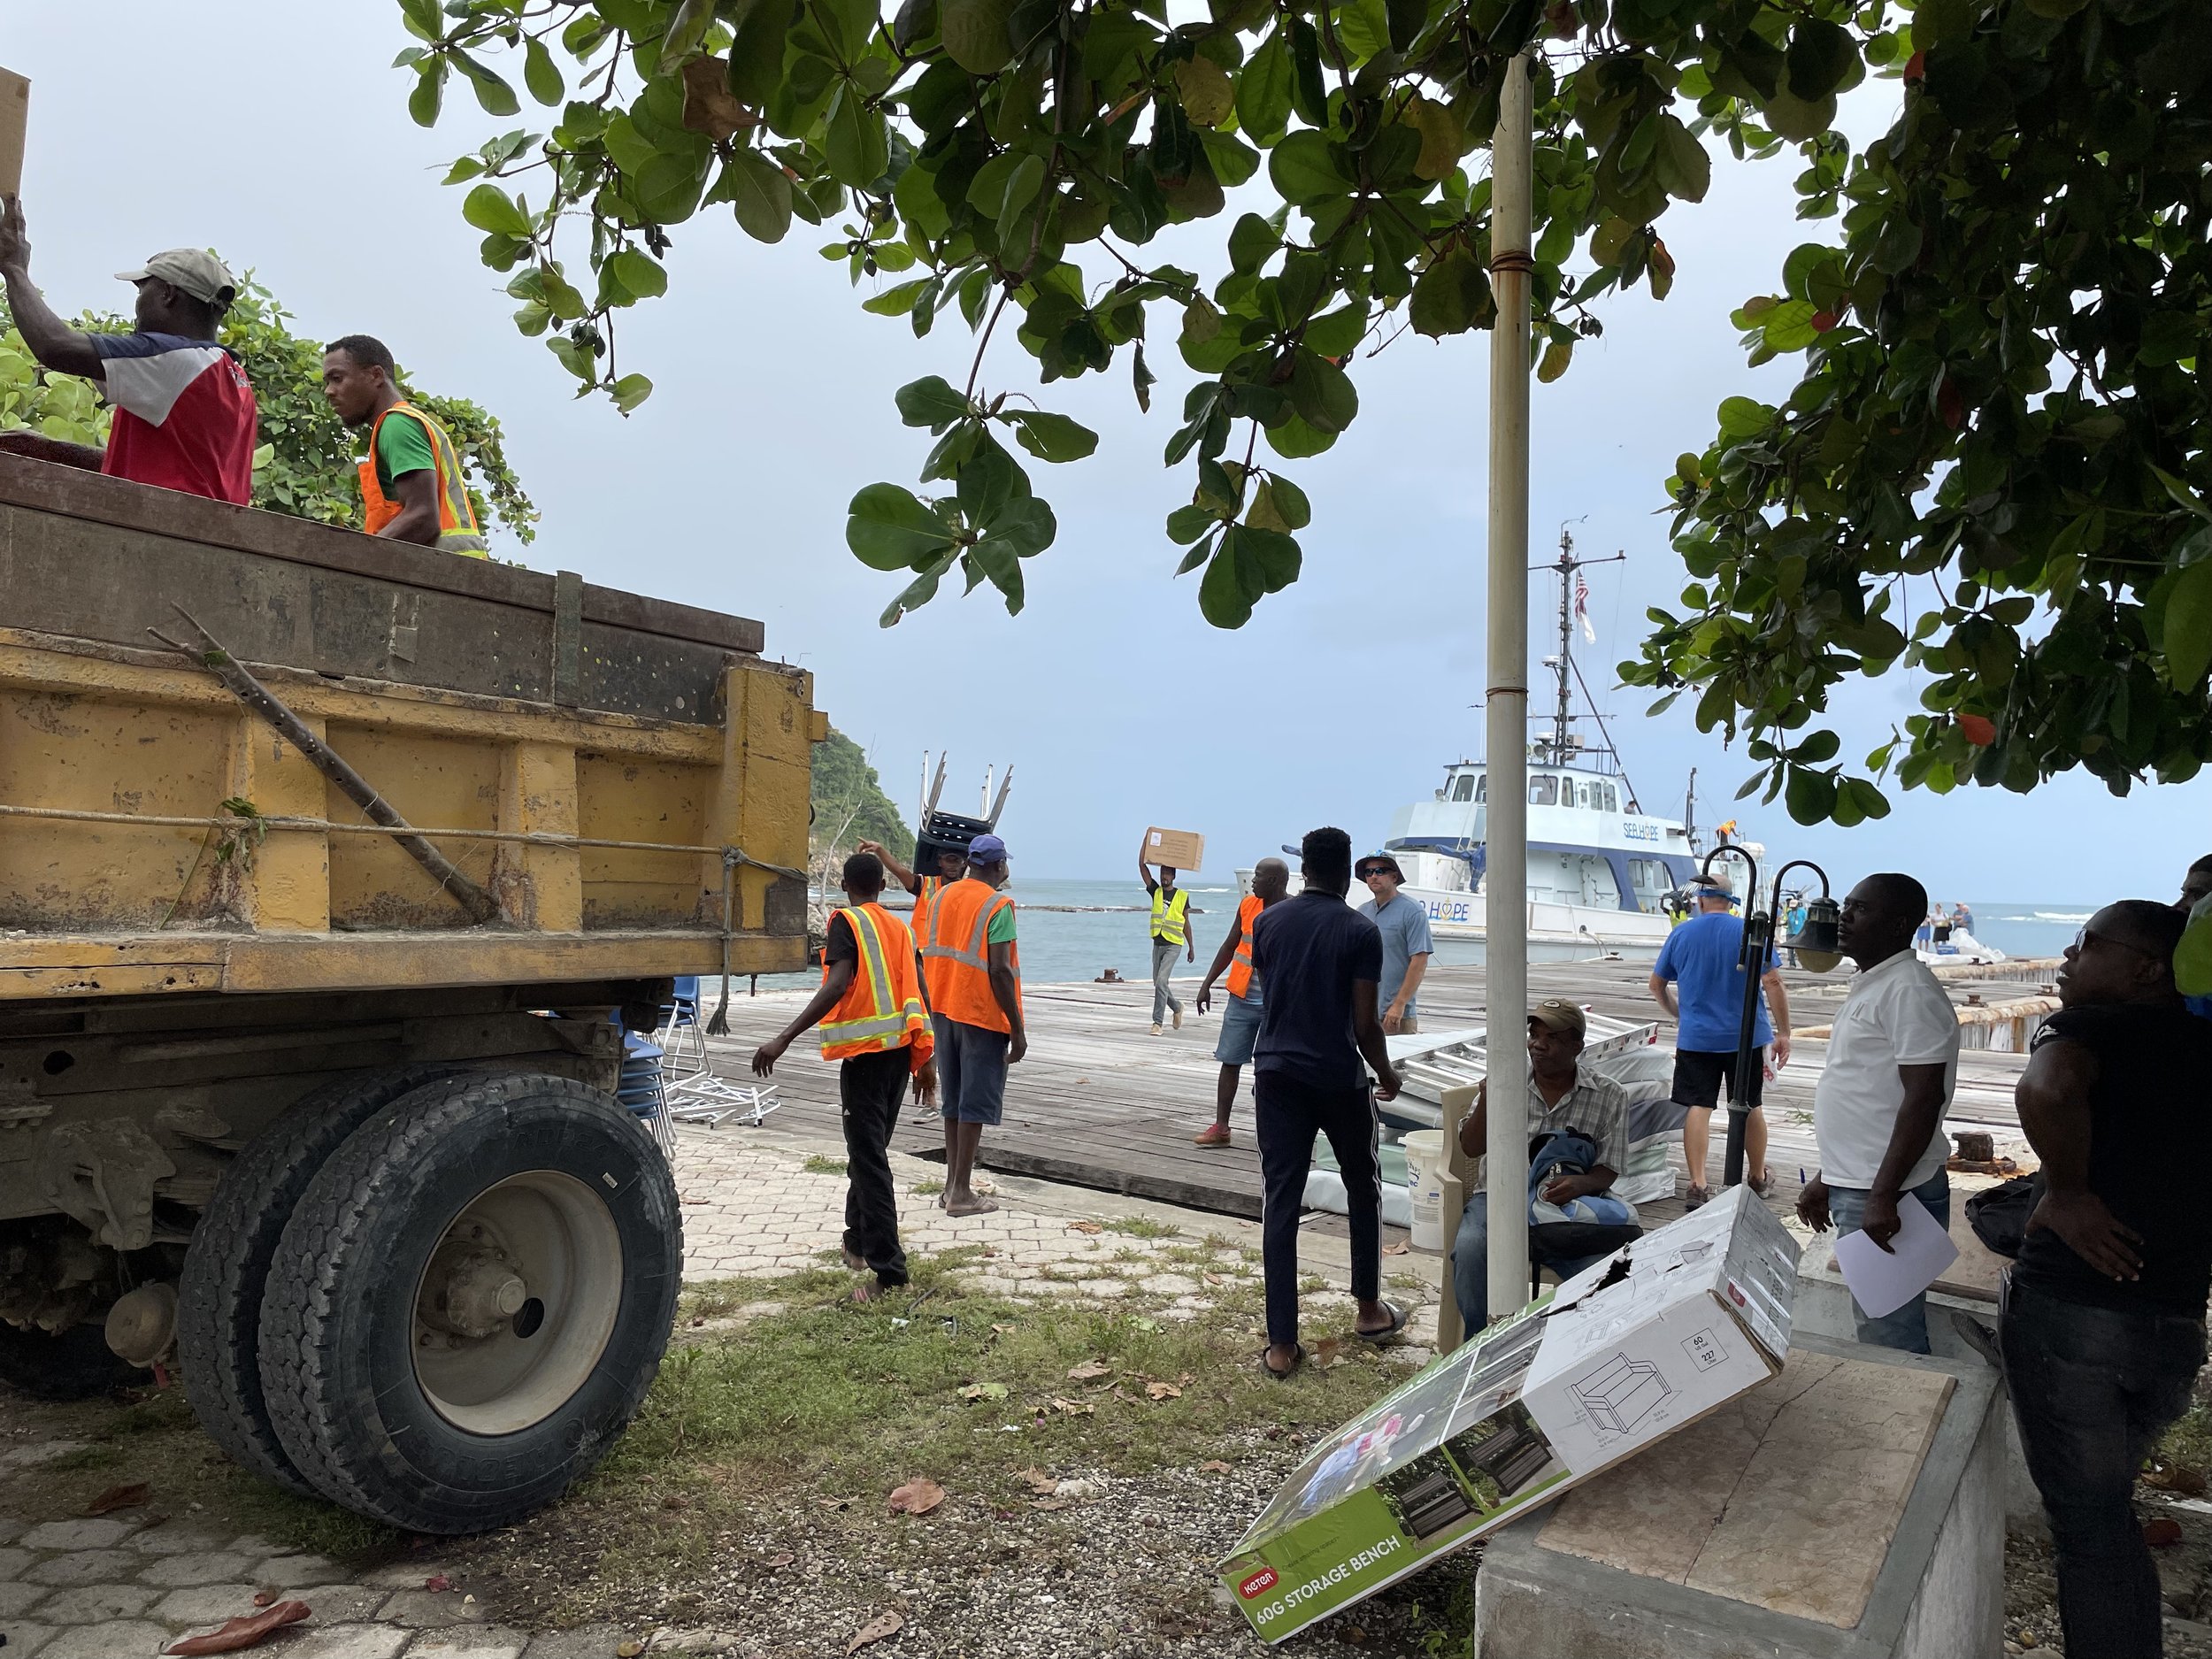 Off loading in Jacmel